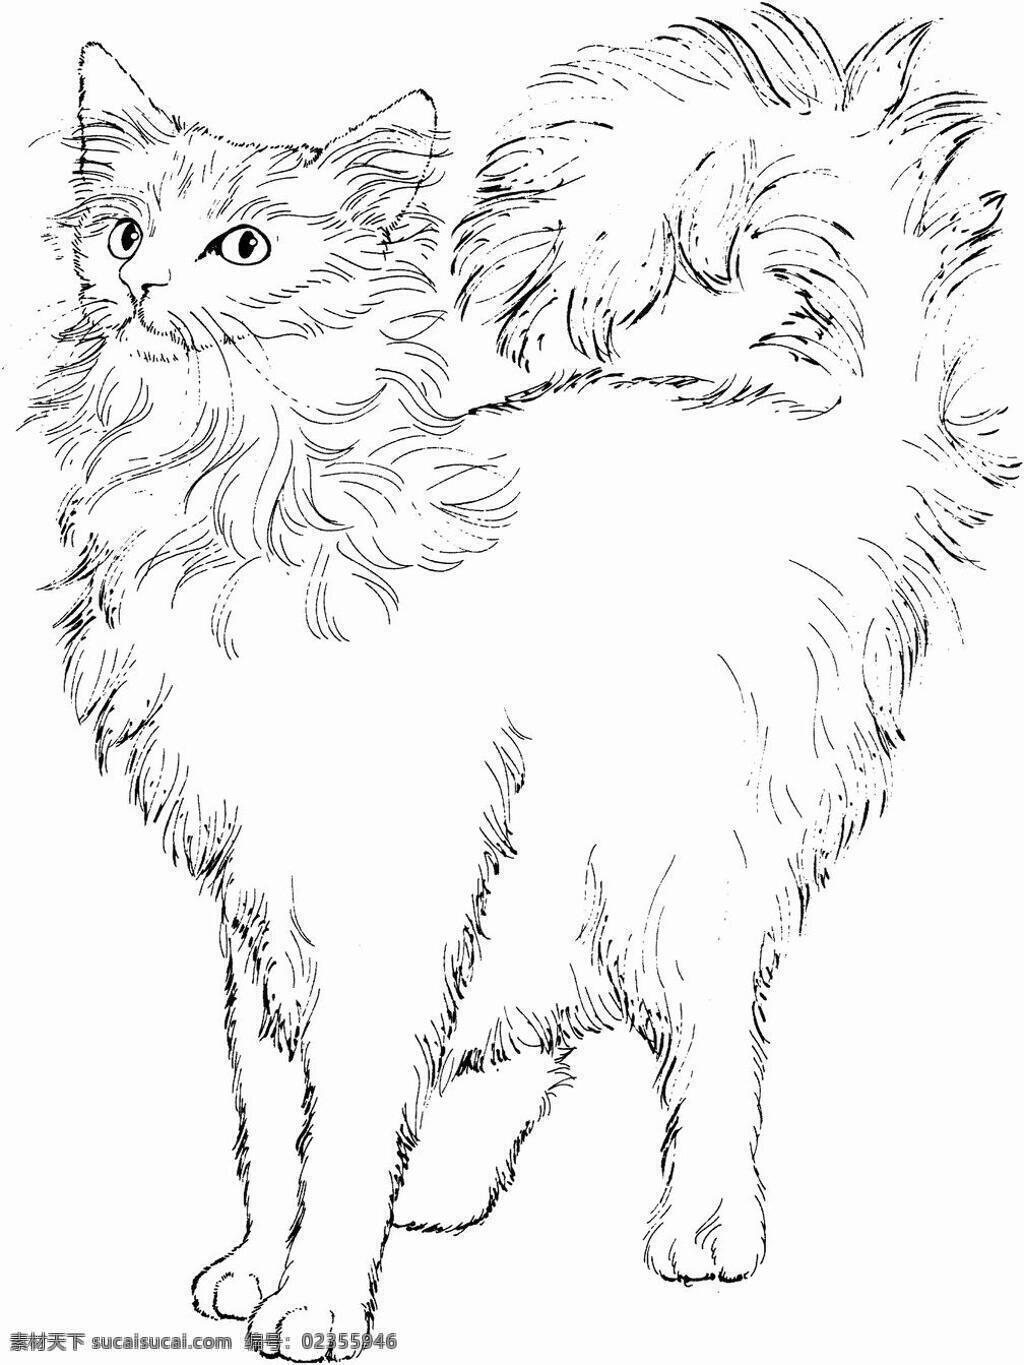 猫的素描 猫 猫科动物 设计素材 动物专辑 素描速写 书画美术 白色